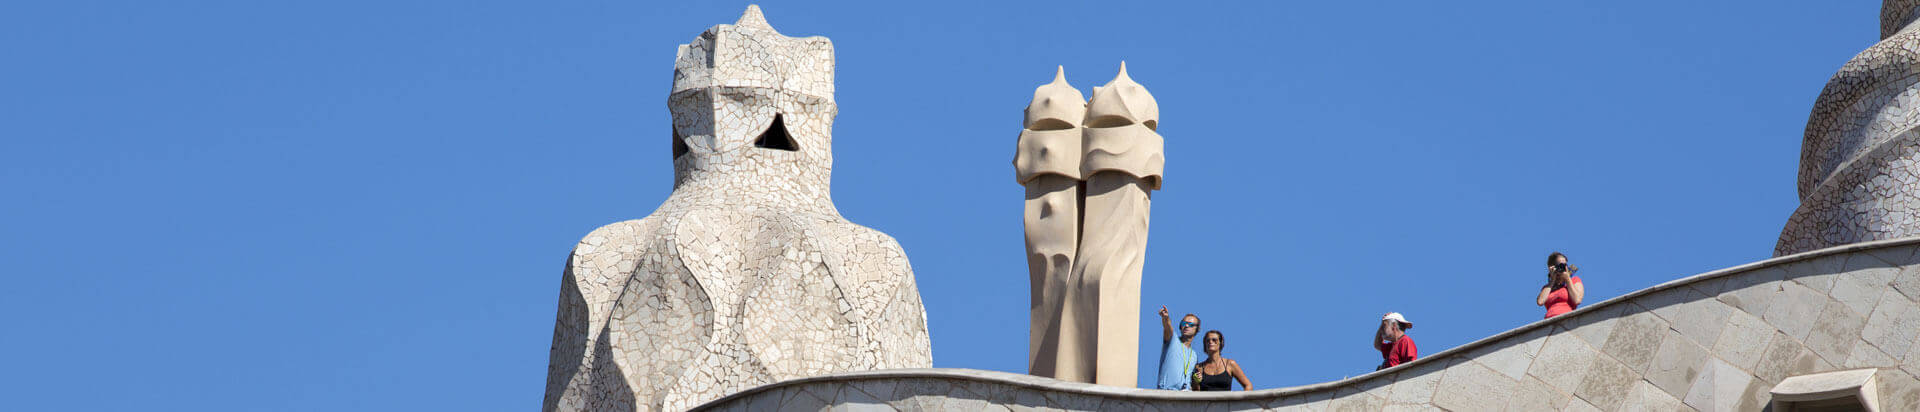 Activités et expositions de La Pedrera (Casa Mila) de Gaudí à Barcelone